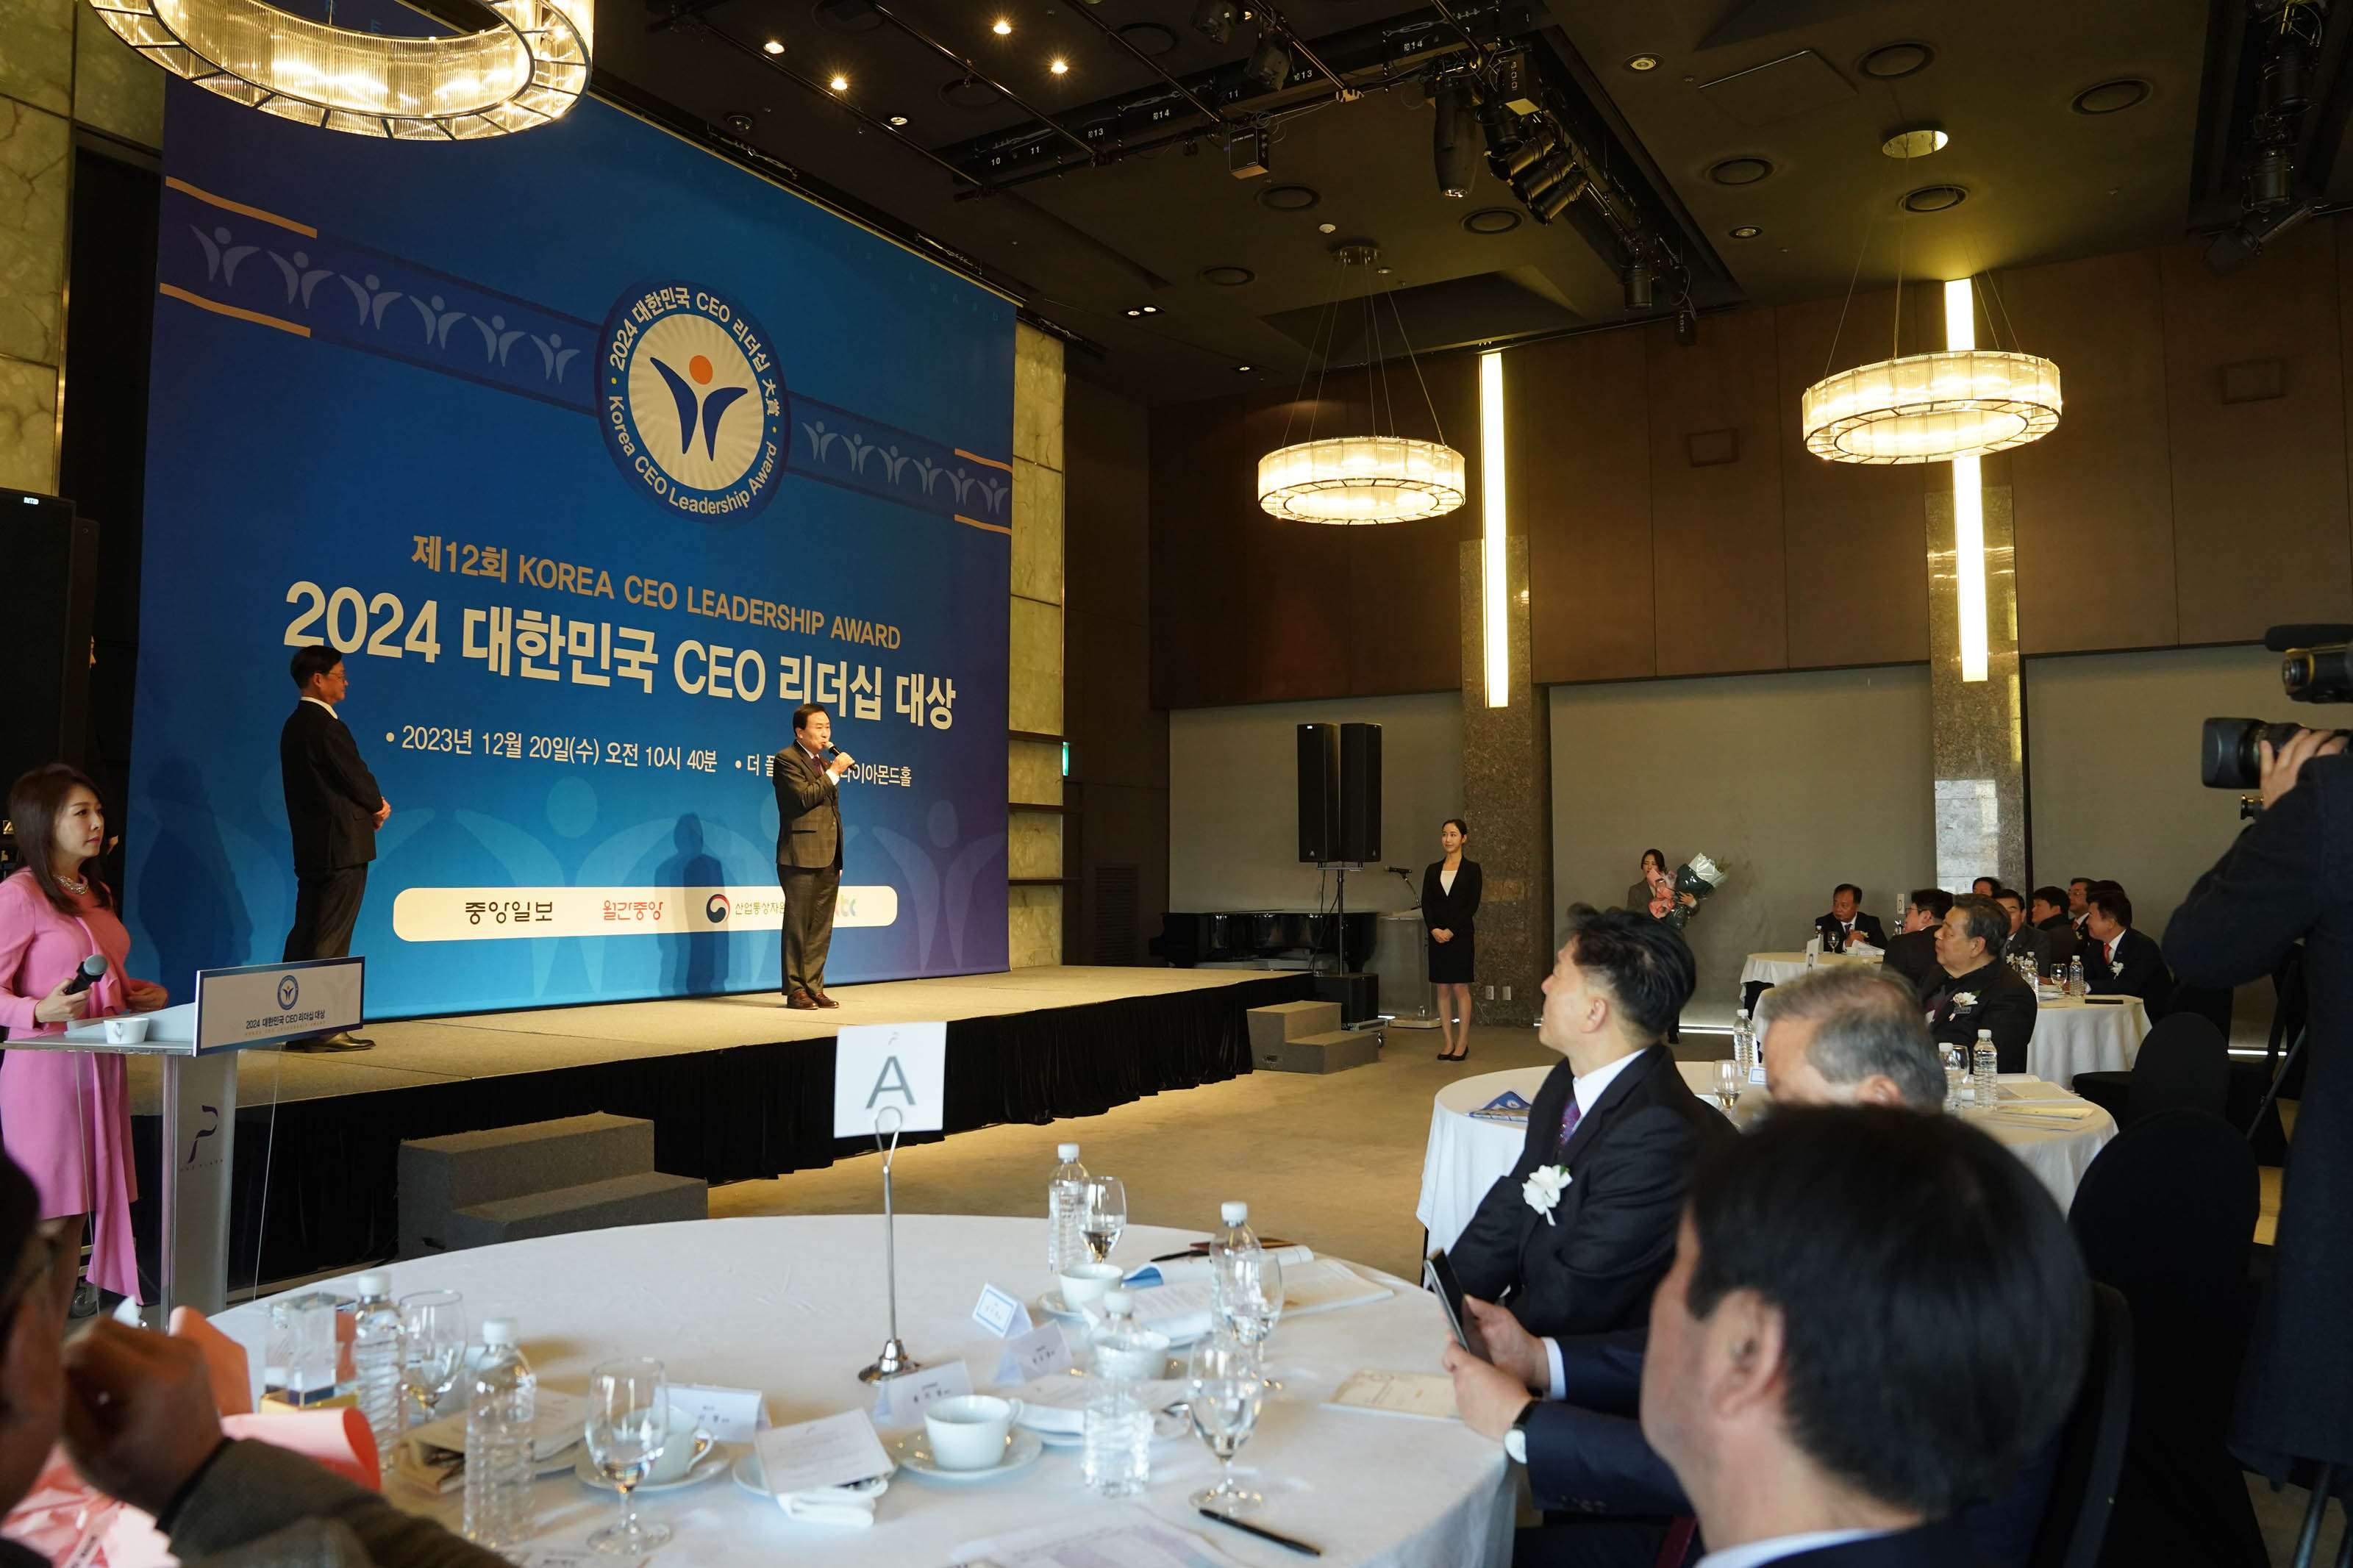 제 12회 KOREA CEO LEADERSHIP AWARD 2024 대한민국 CEO 리더쉽 대상 배경을두고 단상위에서 발표하는 목포시장 박홍률과 집중하는 청중